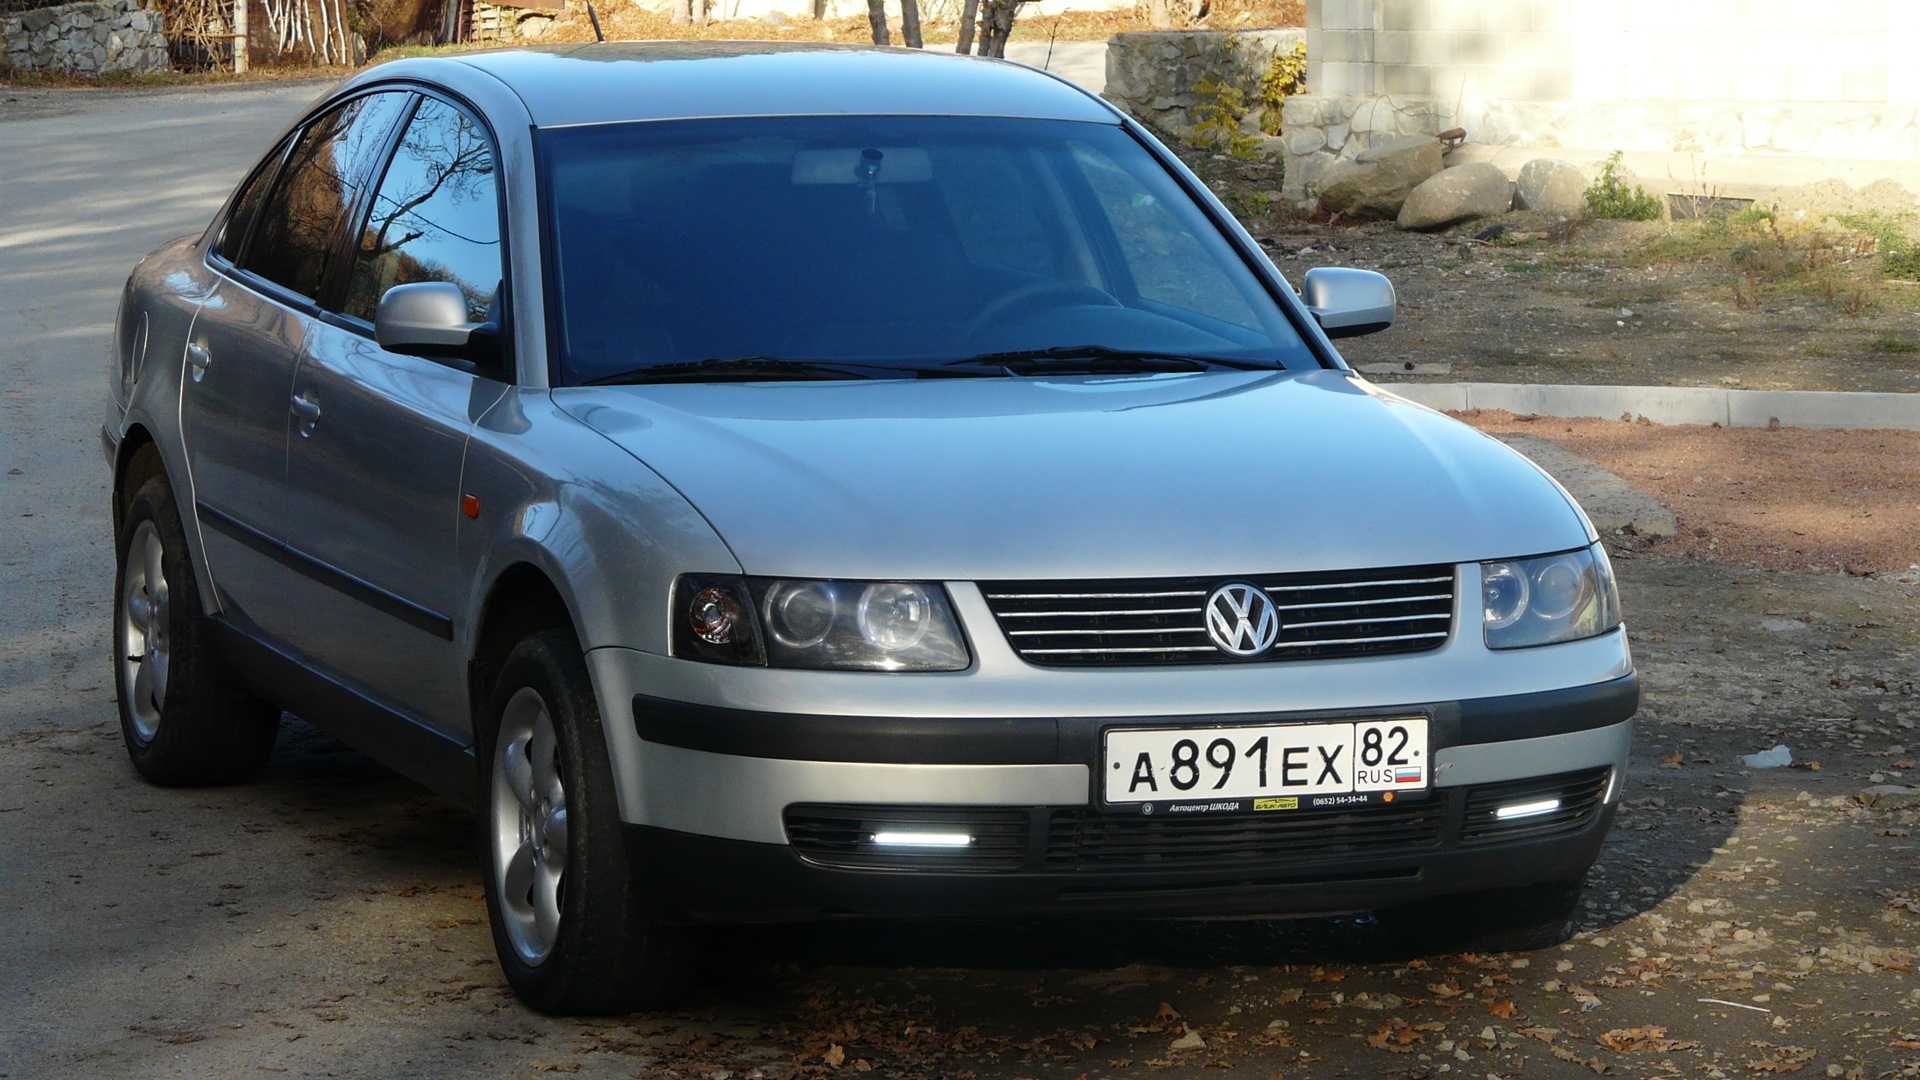 Пассат 1998г. VW Passat b5 1998. Volkswagen Passat 1998 года. Фольксваген Пассат б5 1998г. Фольксваген Пассат b5 1998.